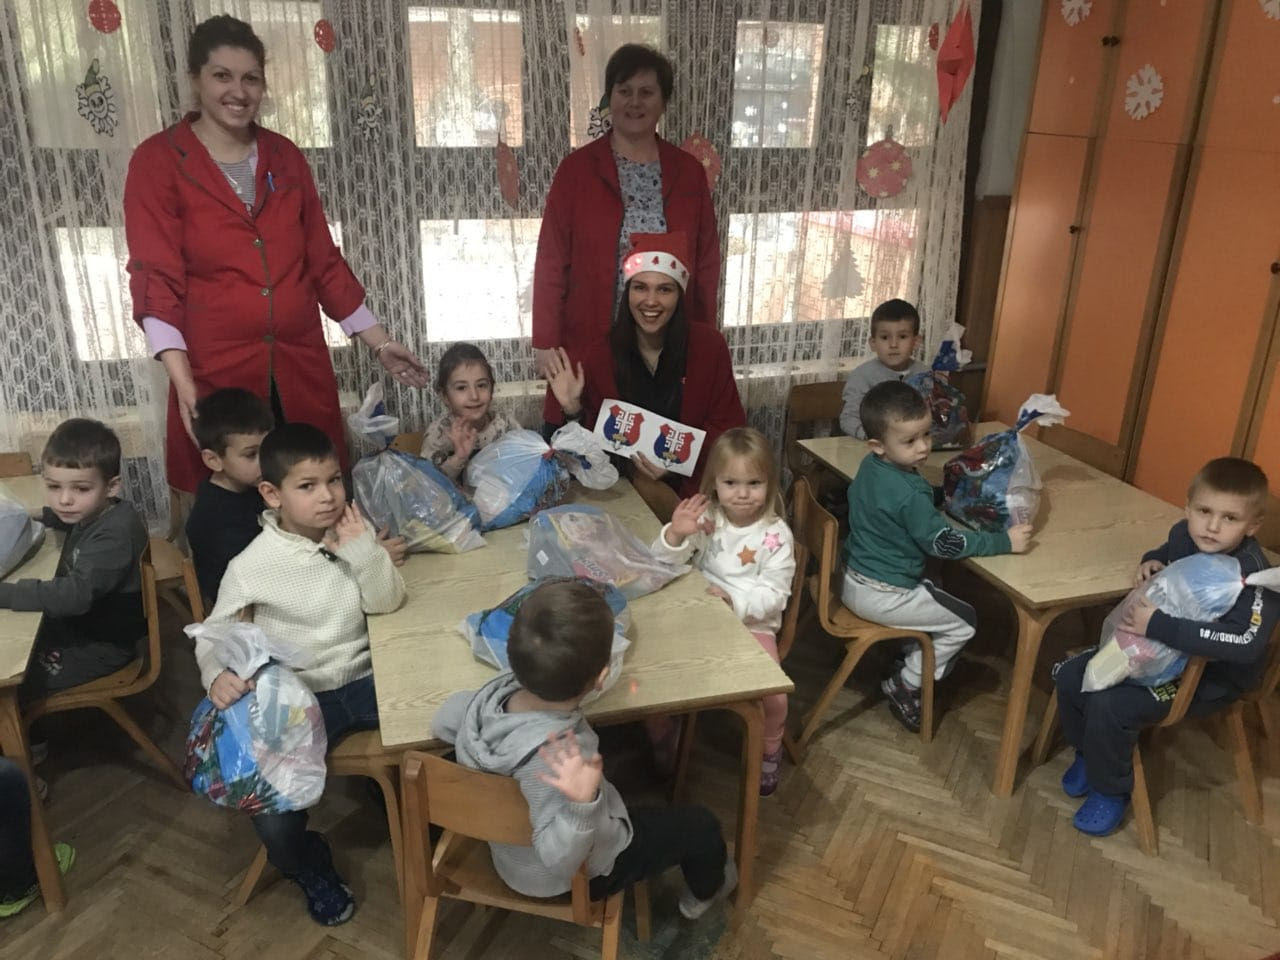 28Jun NGO Delivers Christmas Gifts to 730 Kids in Kursumlija